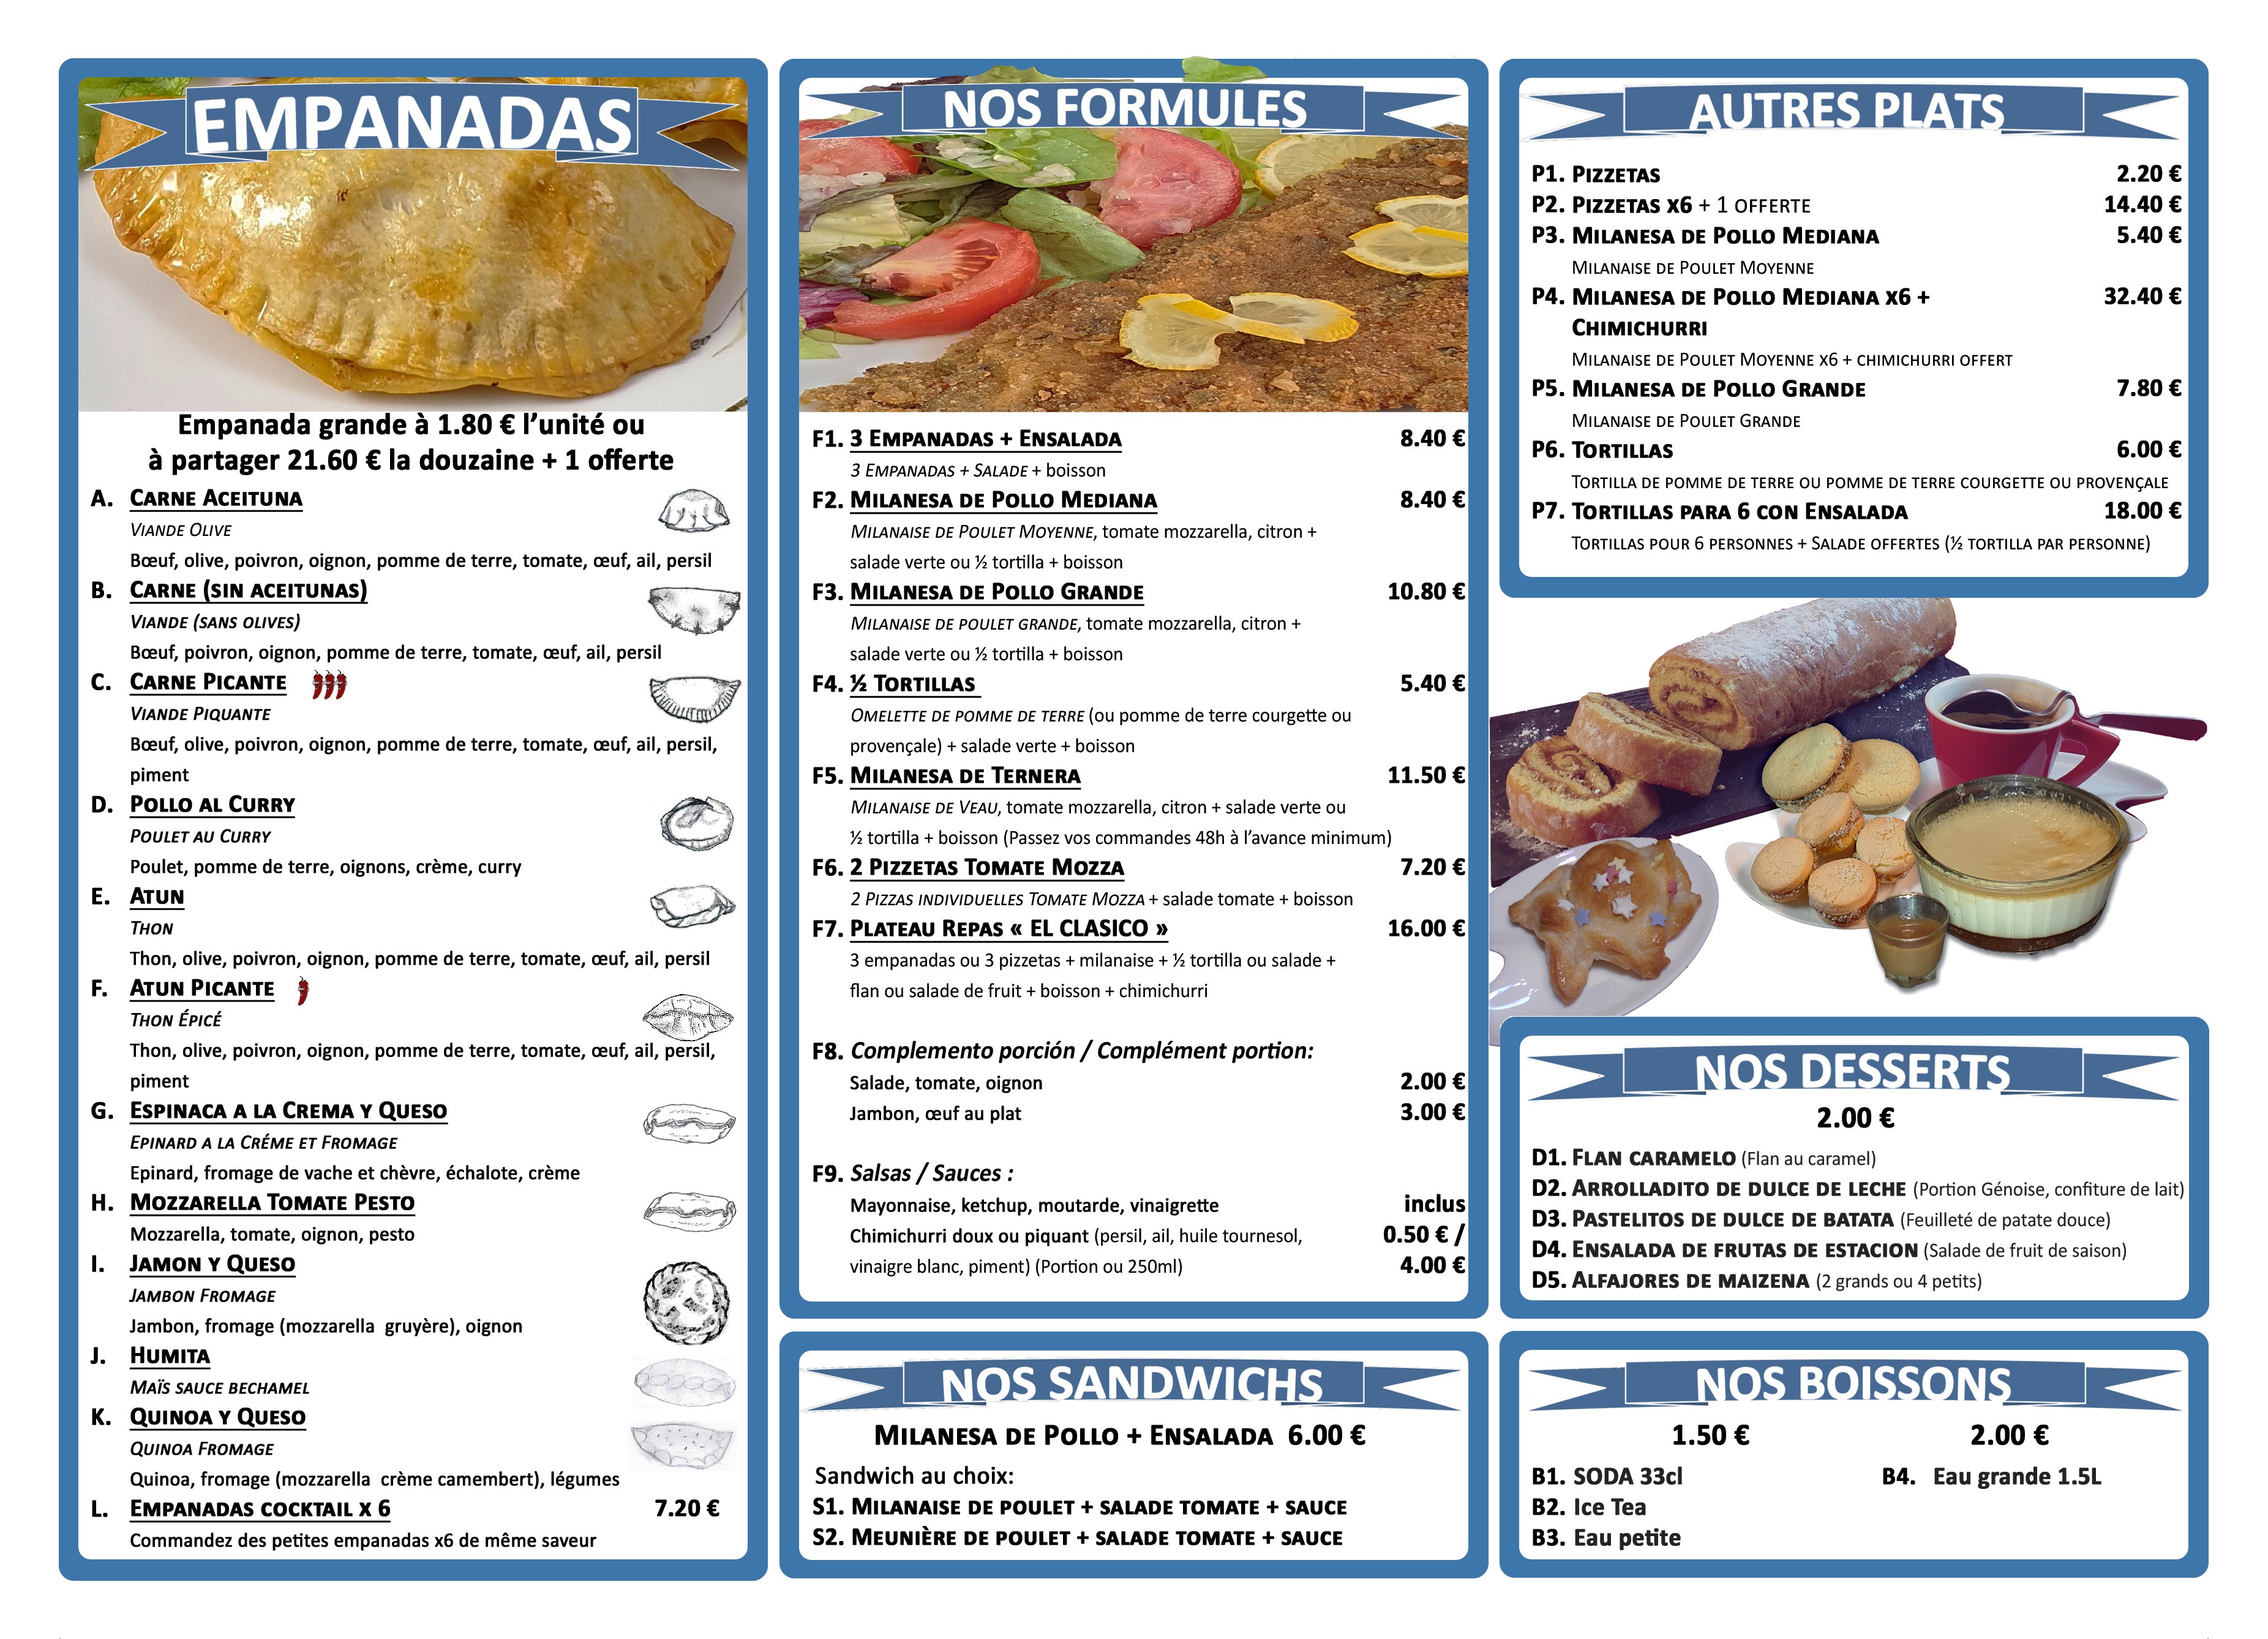 flyer-menu-el-clasico2020.jpg